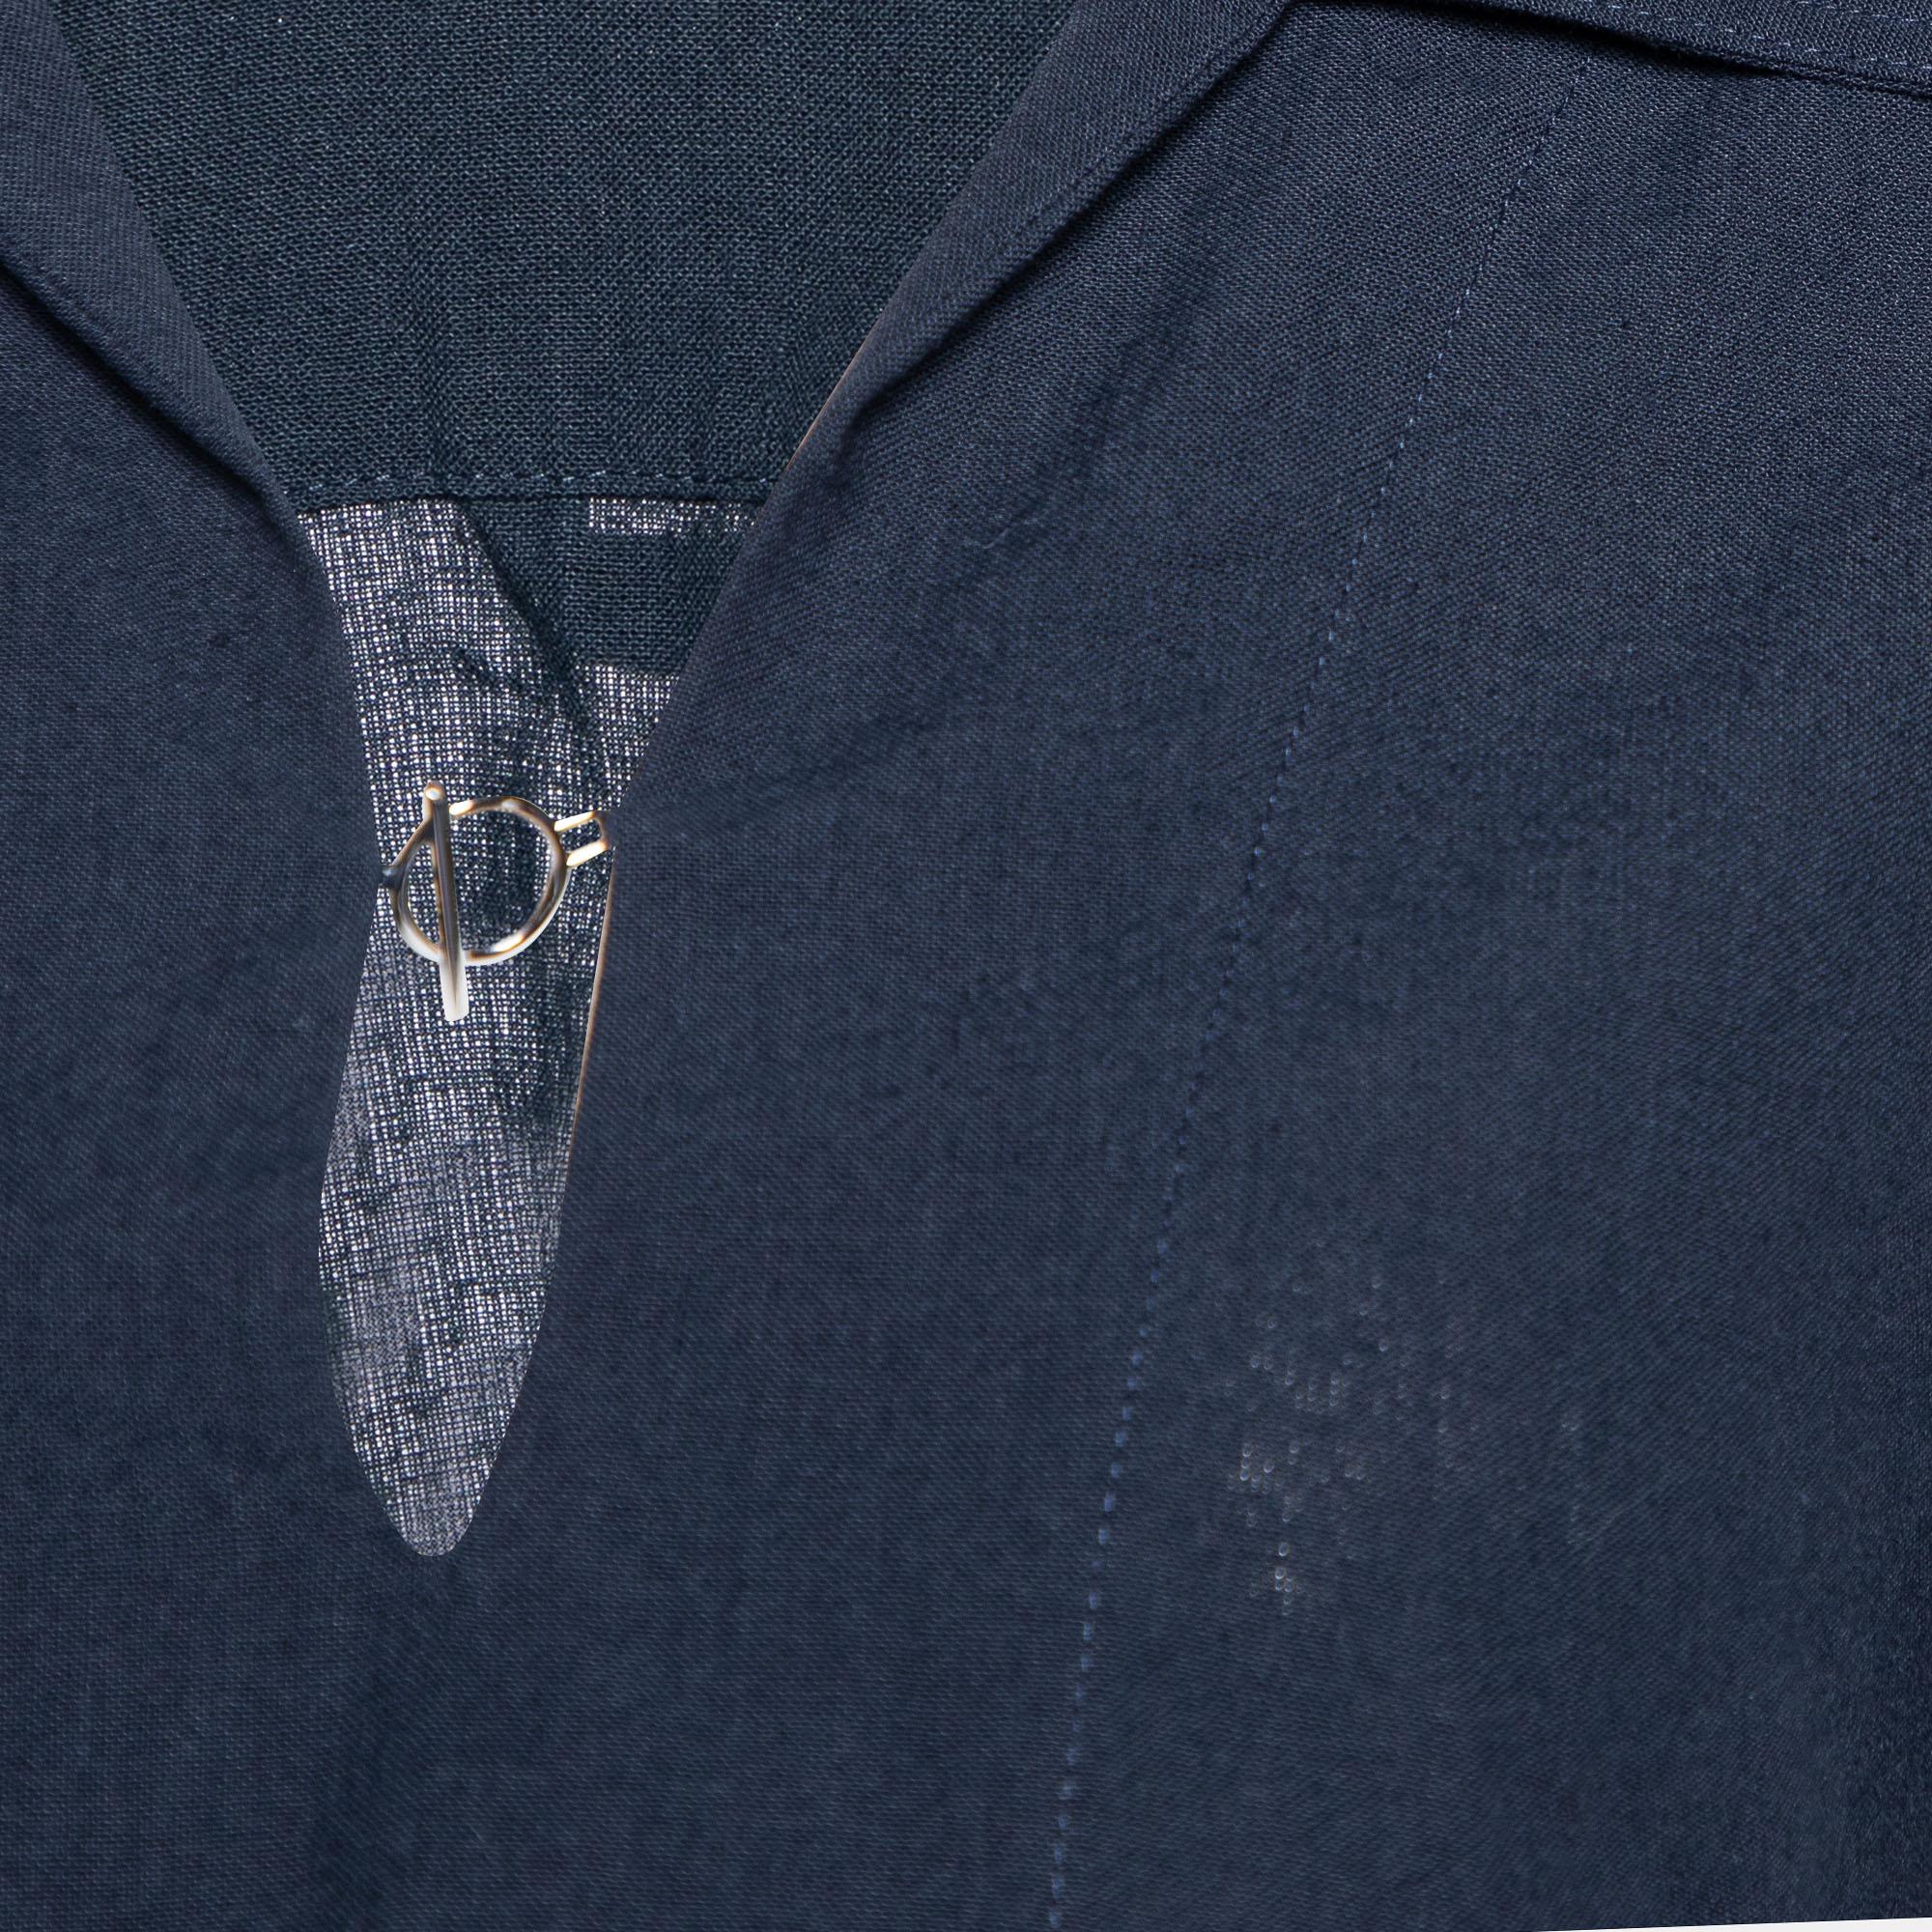 Black Jacquemus Navy Blue Linen & Cotton Le Haut Bebi Crop Top S For Sale